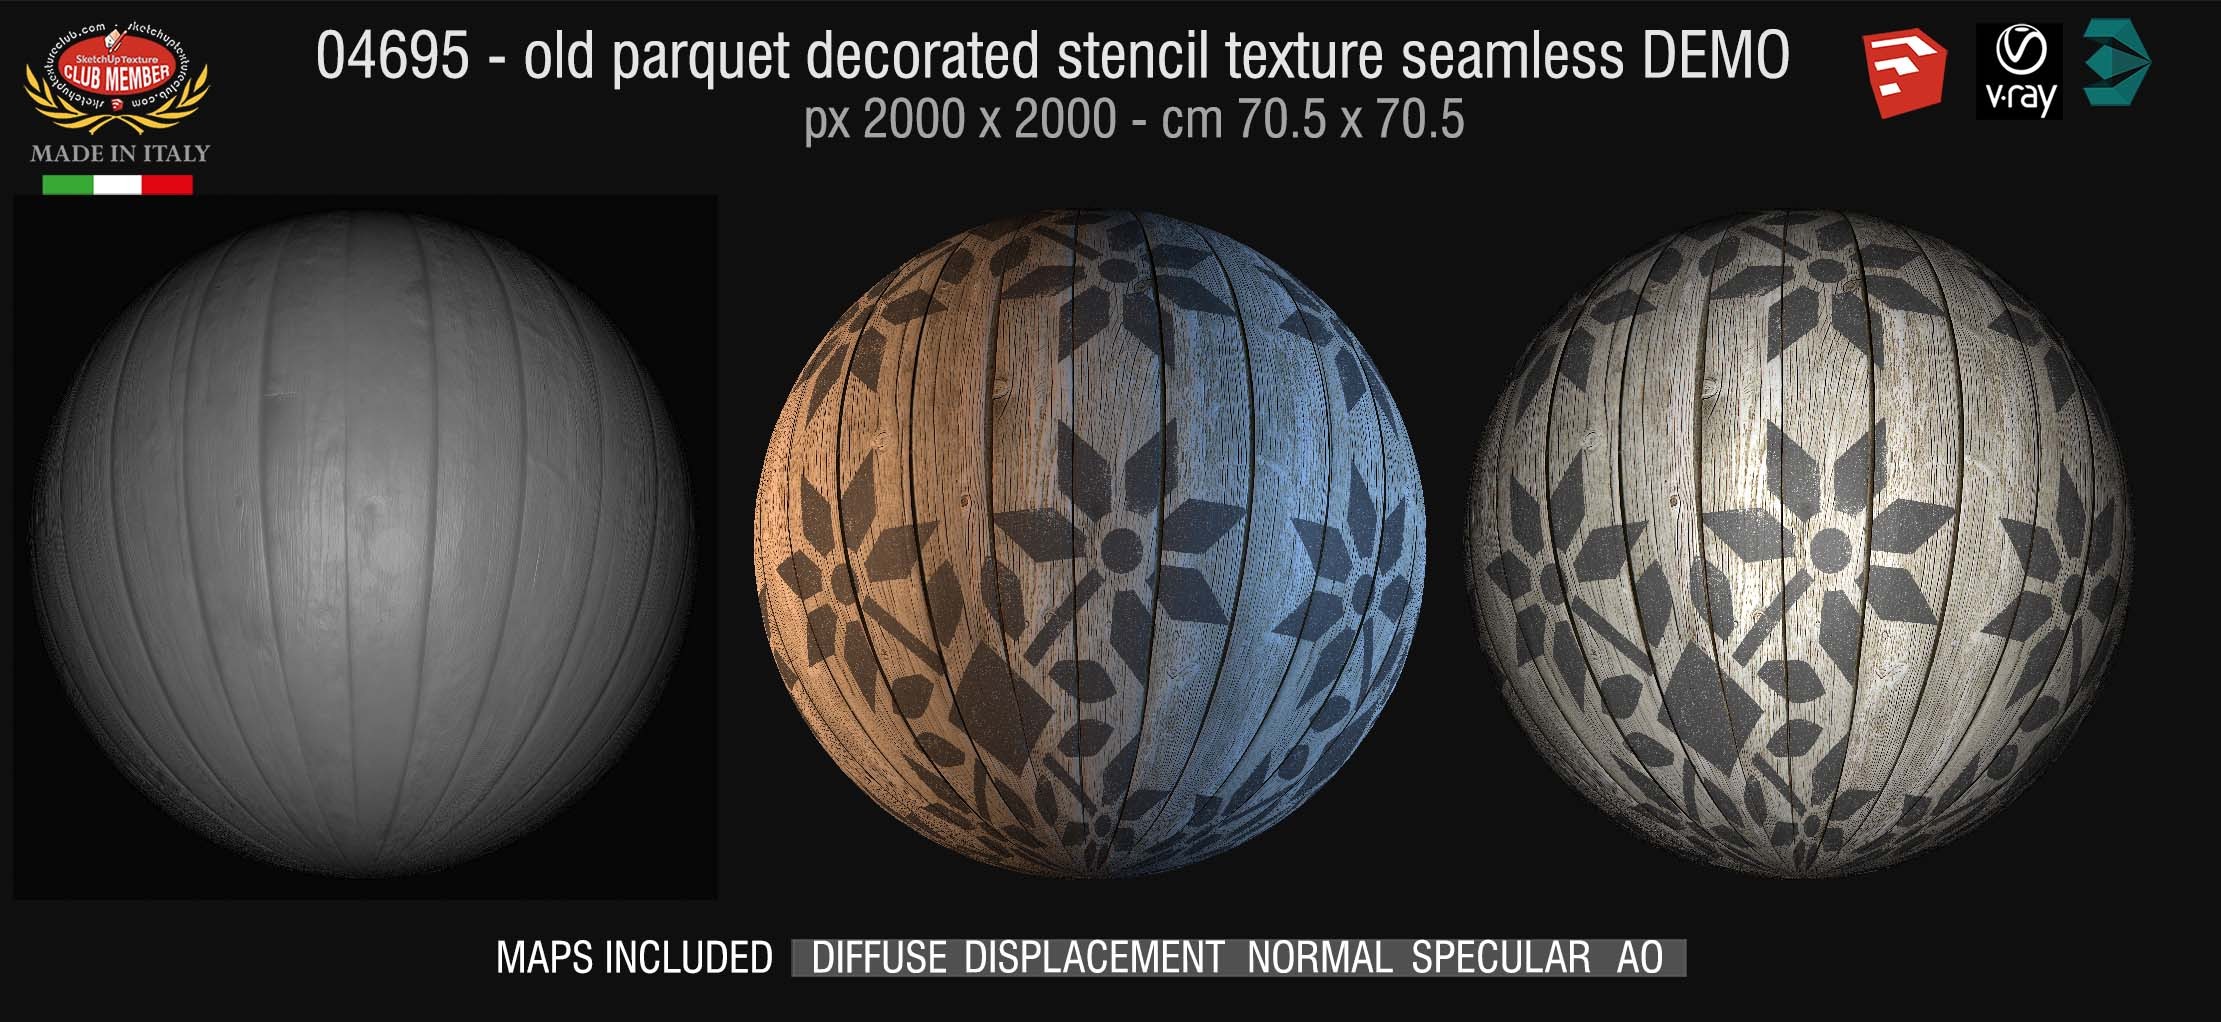 04695 HR Parquet decorated stencil texture seamless + maps DEMO